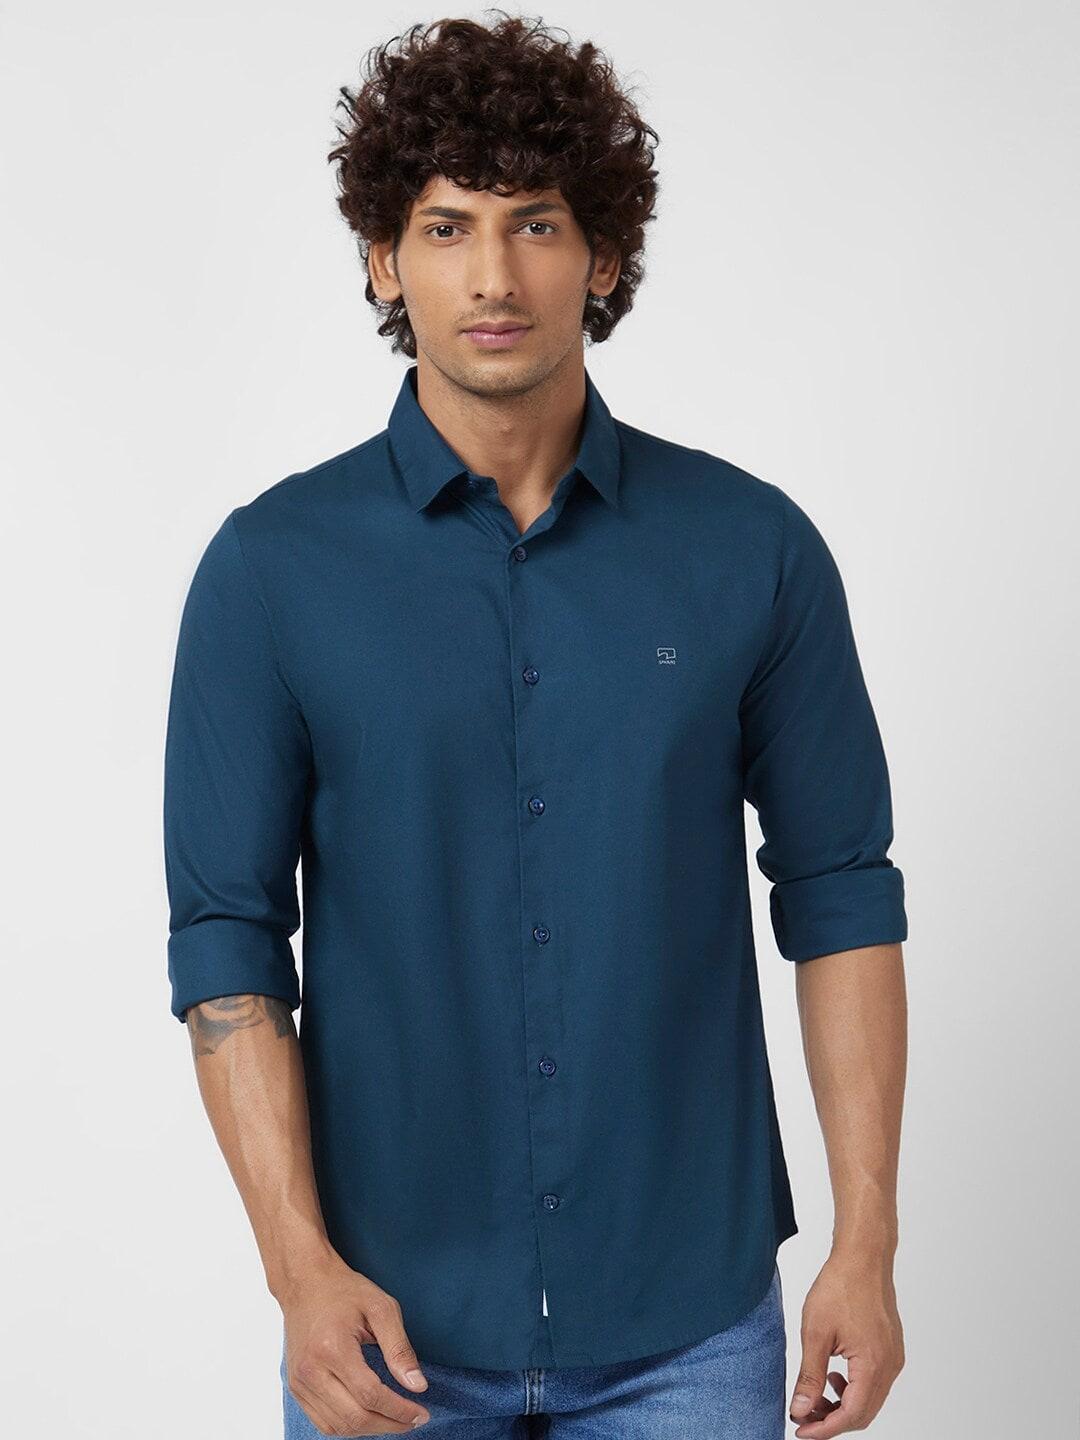 spykar cotton linen regular fit classic casual shirt